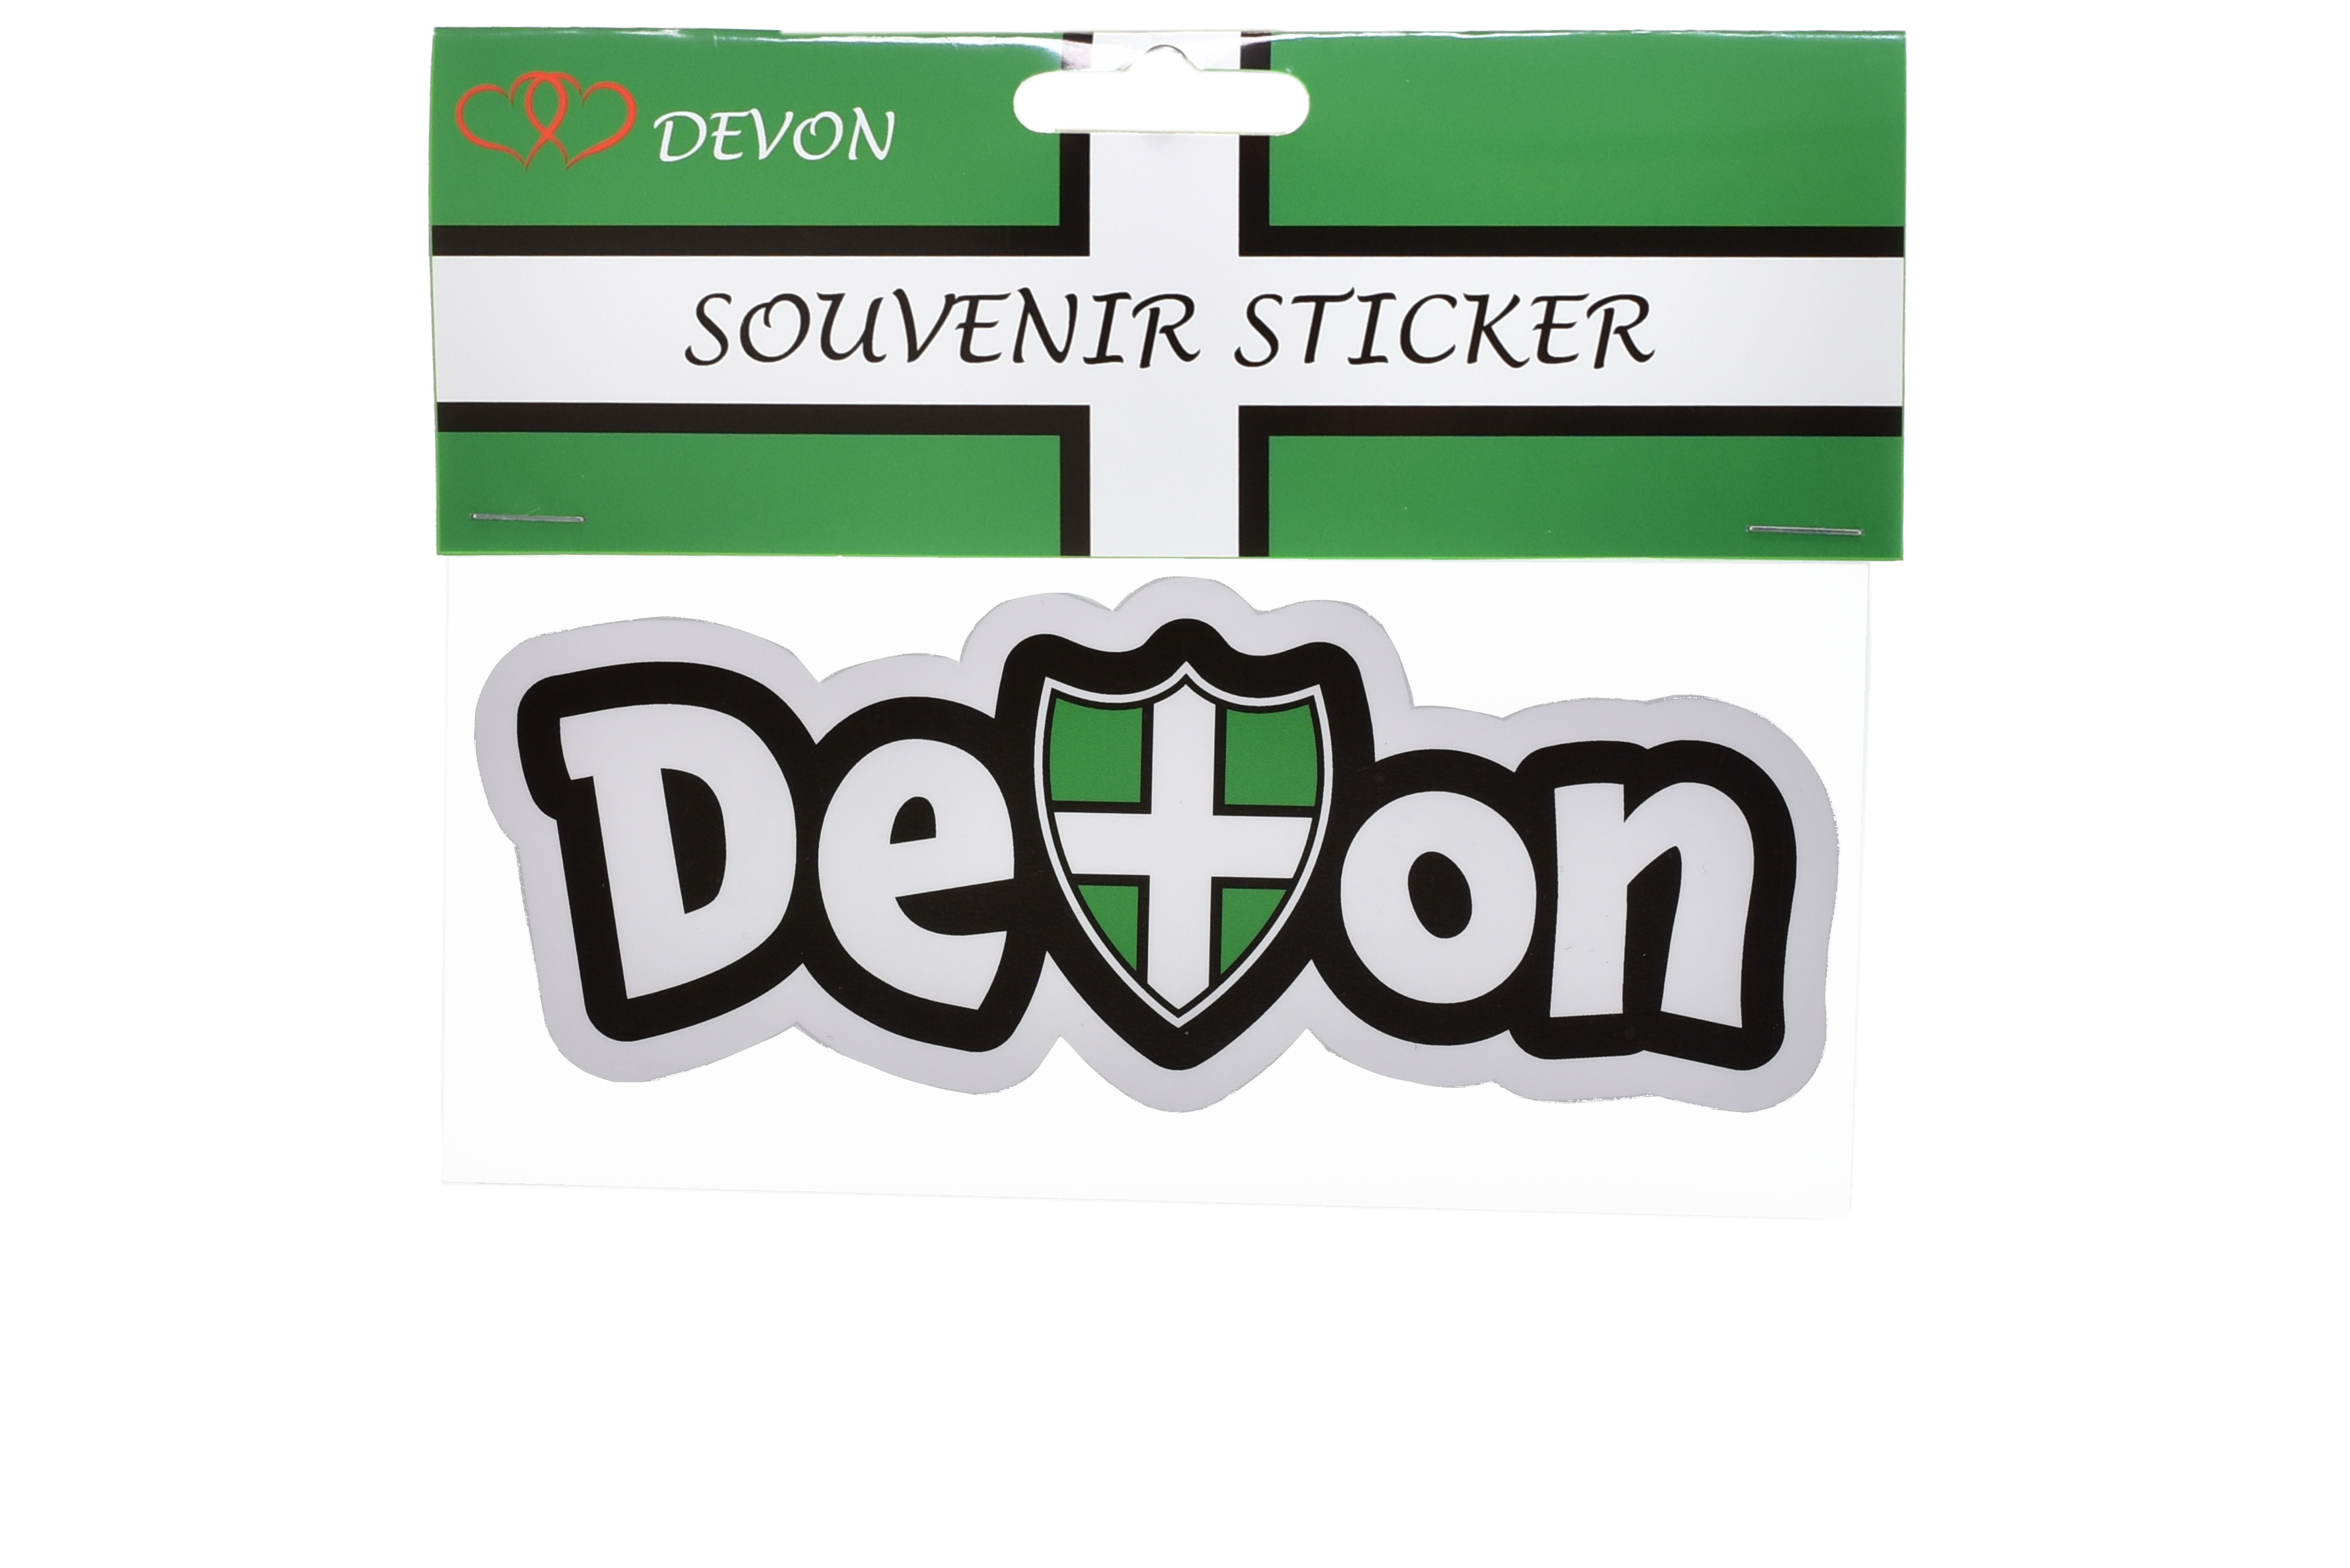 Devon and Shield Bumper Sticker